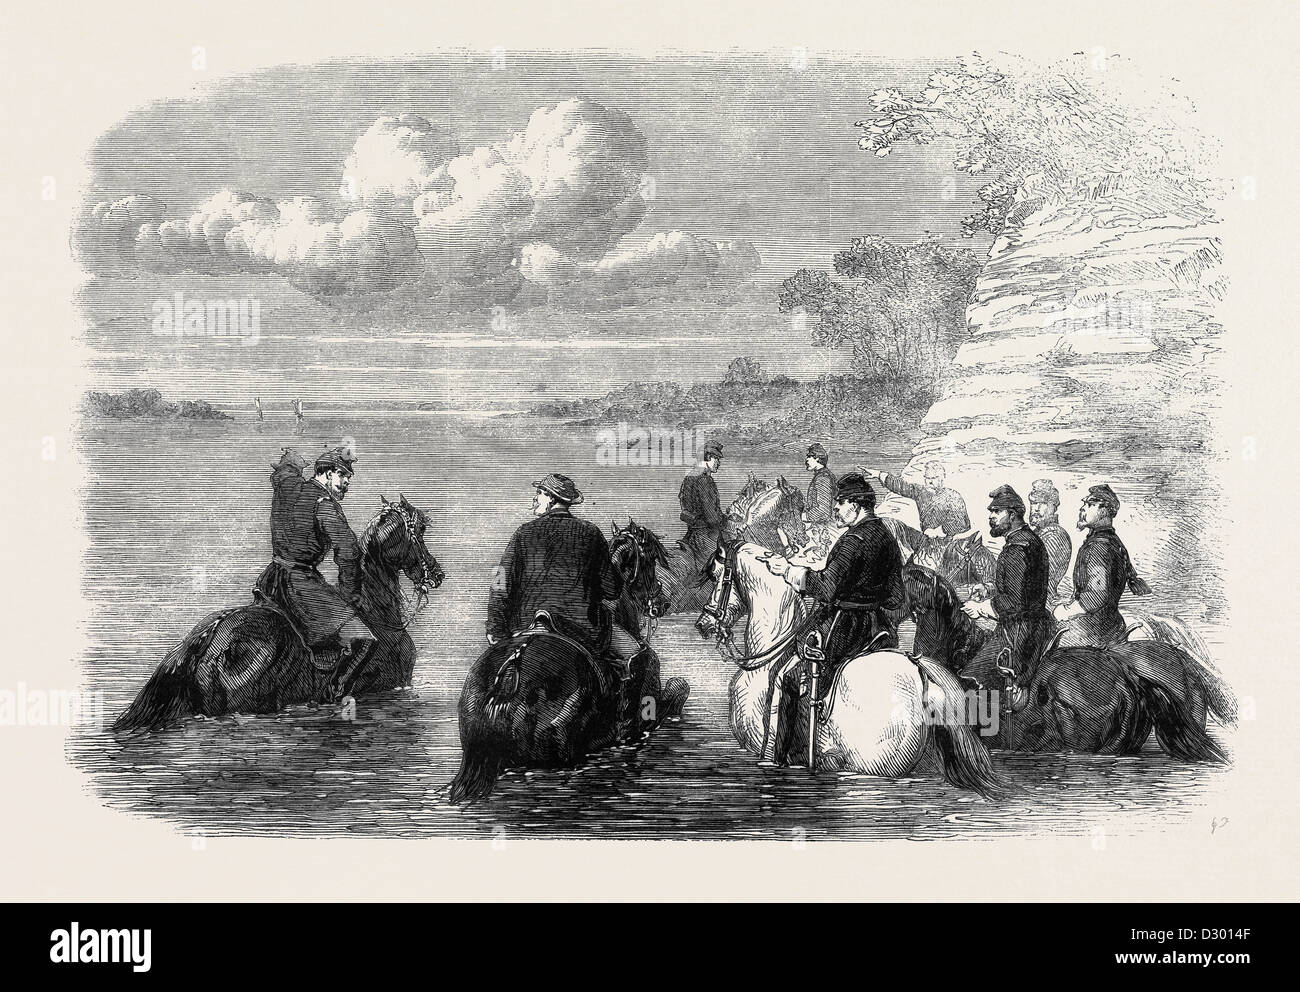 La GUERRA CIVILE IN AMERICA: LA MIA ricognizione generale con falcetti IN POTOMAC 7 DICEMBRE 1861 Foto Stock